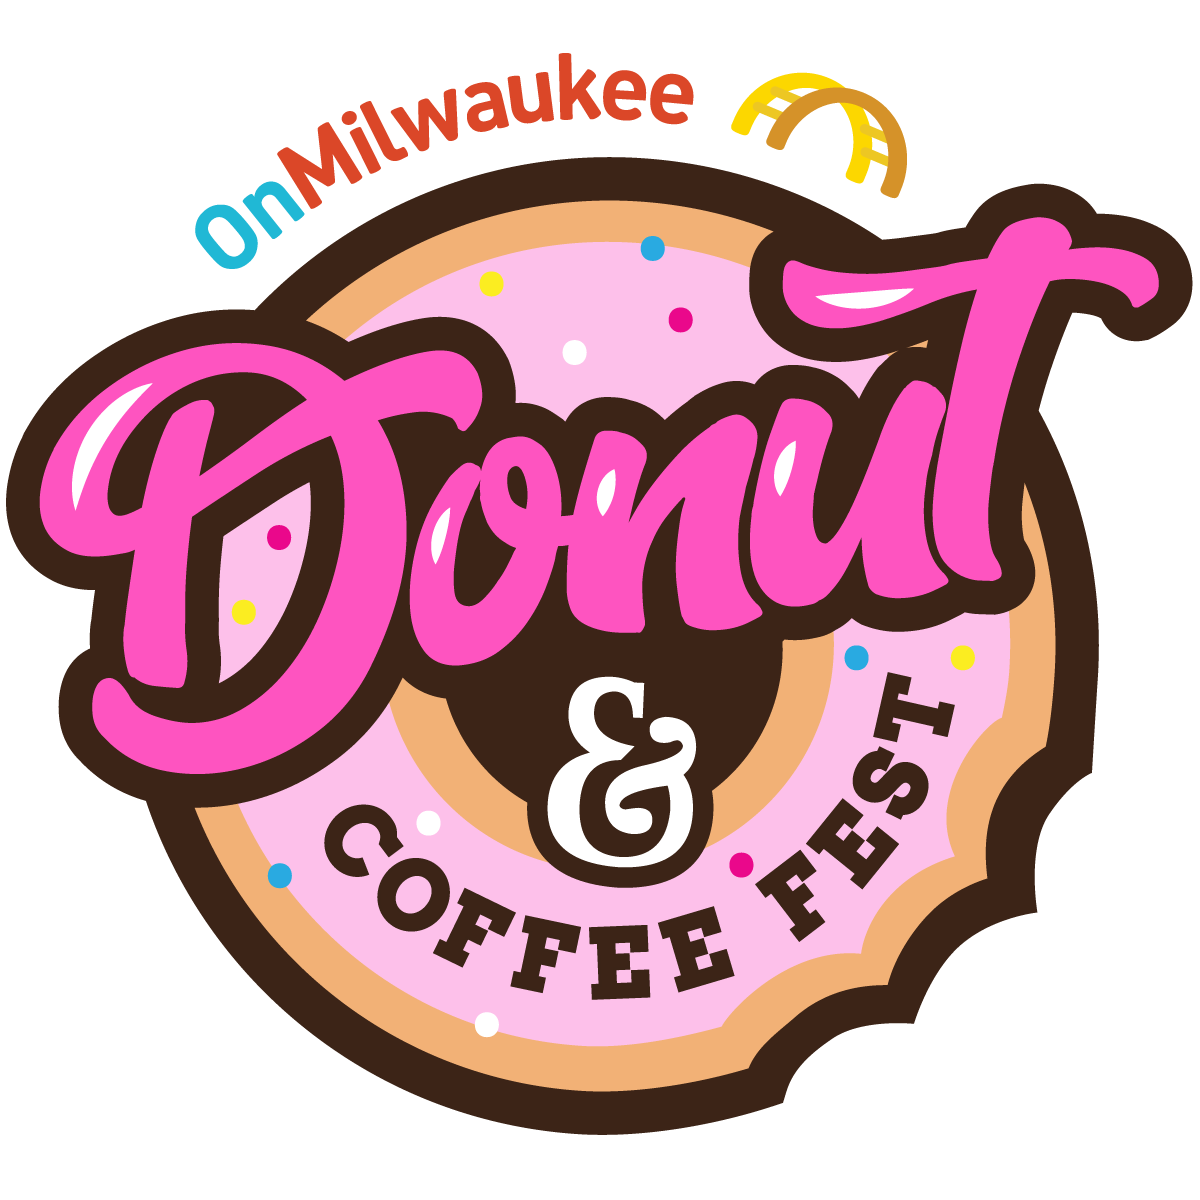 OnMilwaukee Donut & Coffee Fest